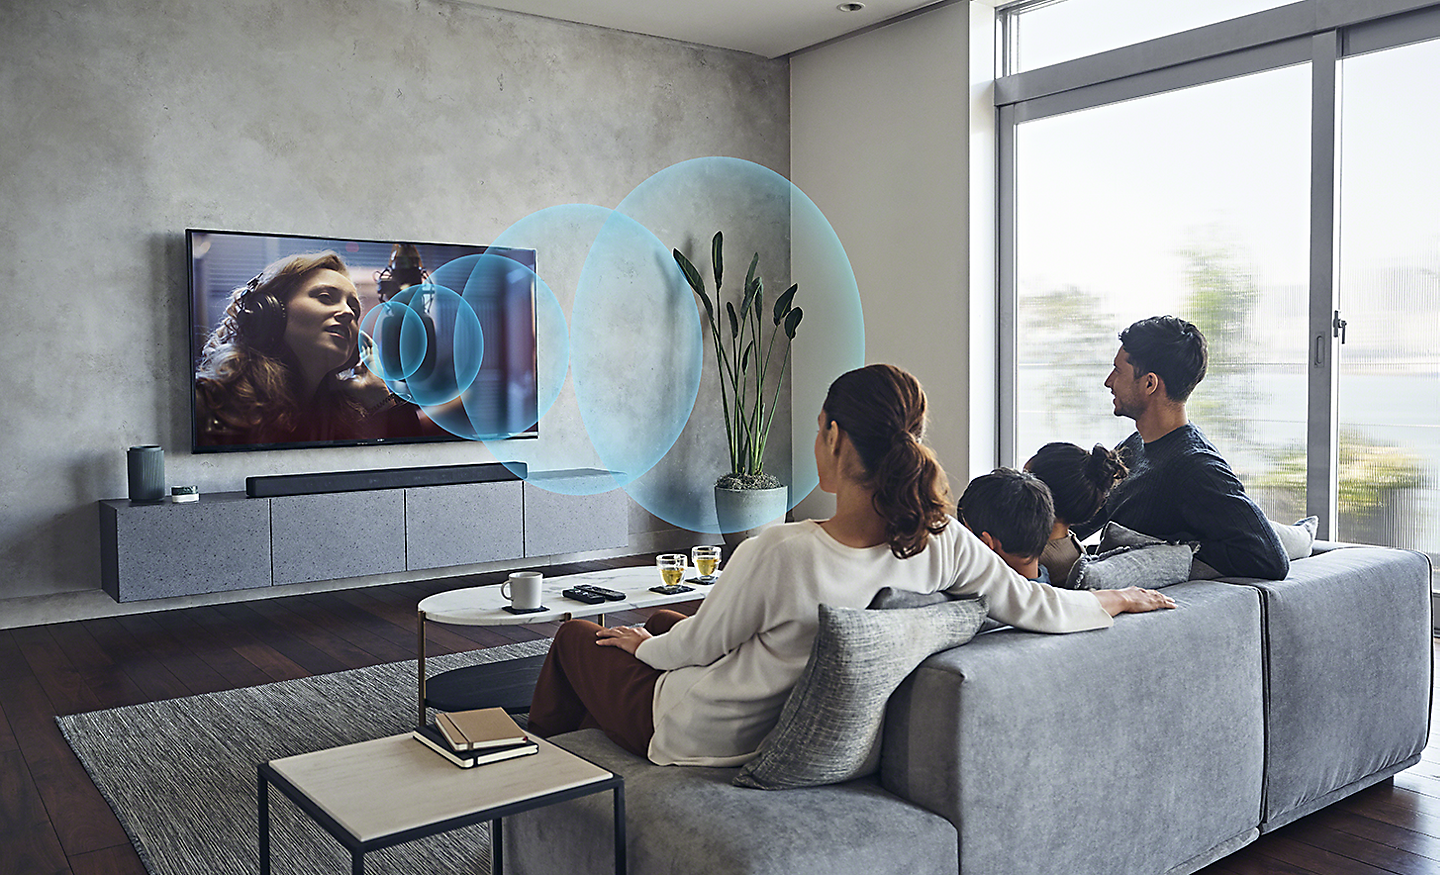 Imagen de una familia en una sala de estar viendo el televisor BRAVIA con ondas de sonido azules ilustradas que representan Acoustic Center Sync